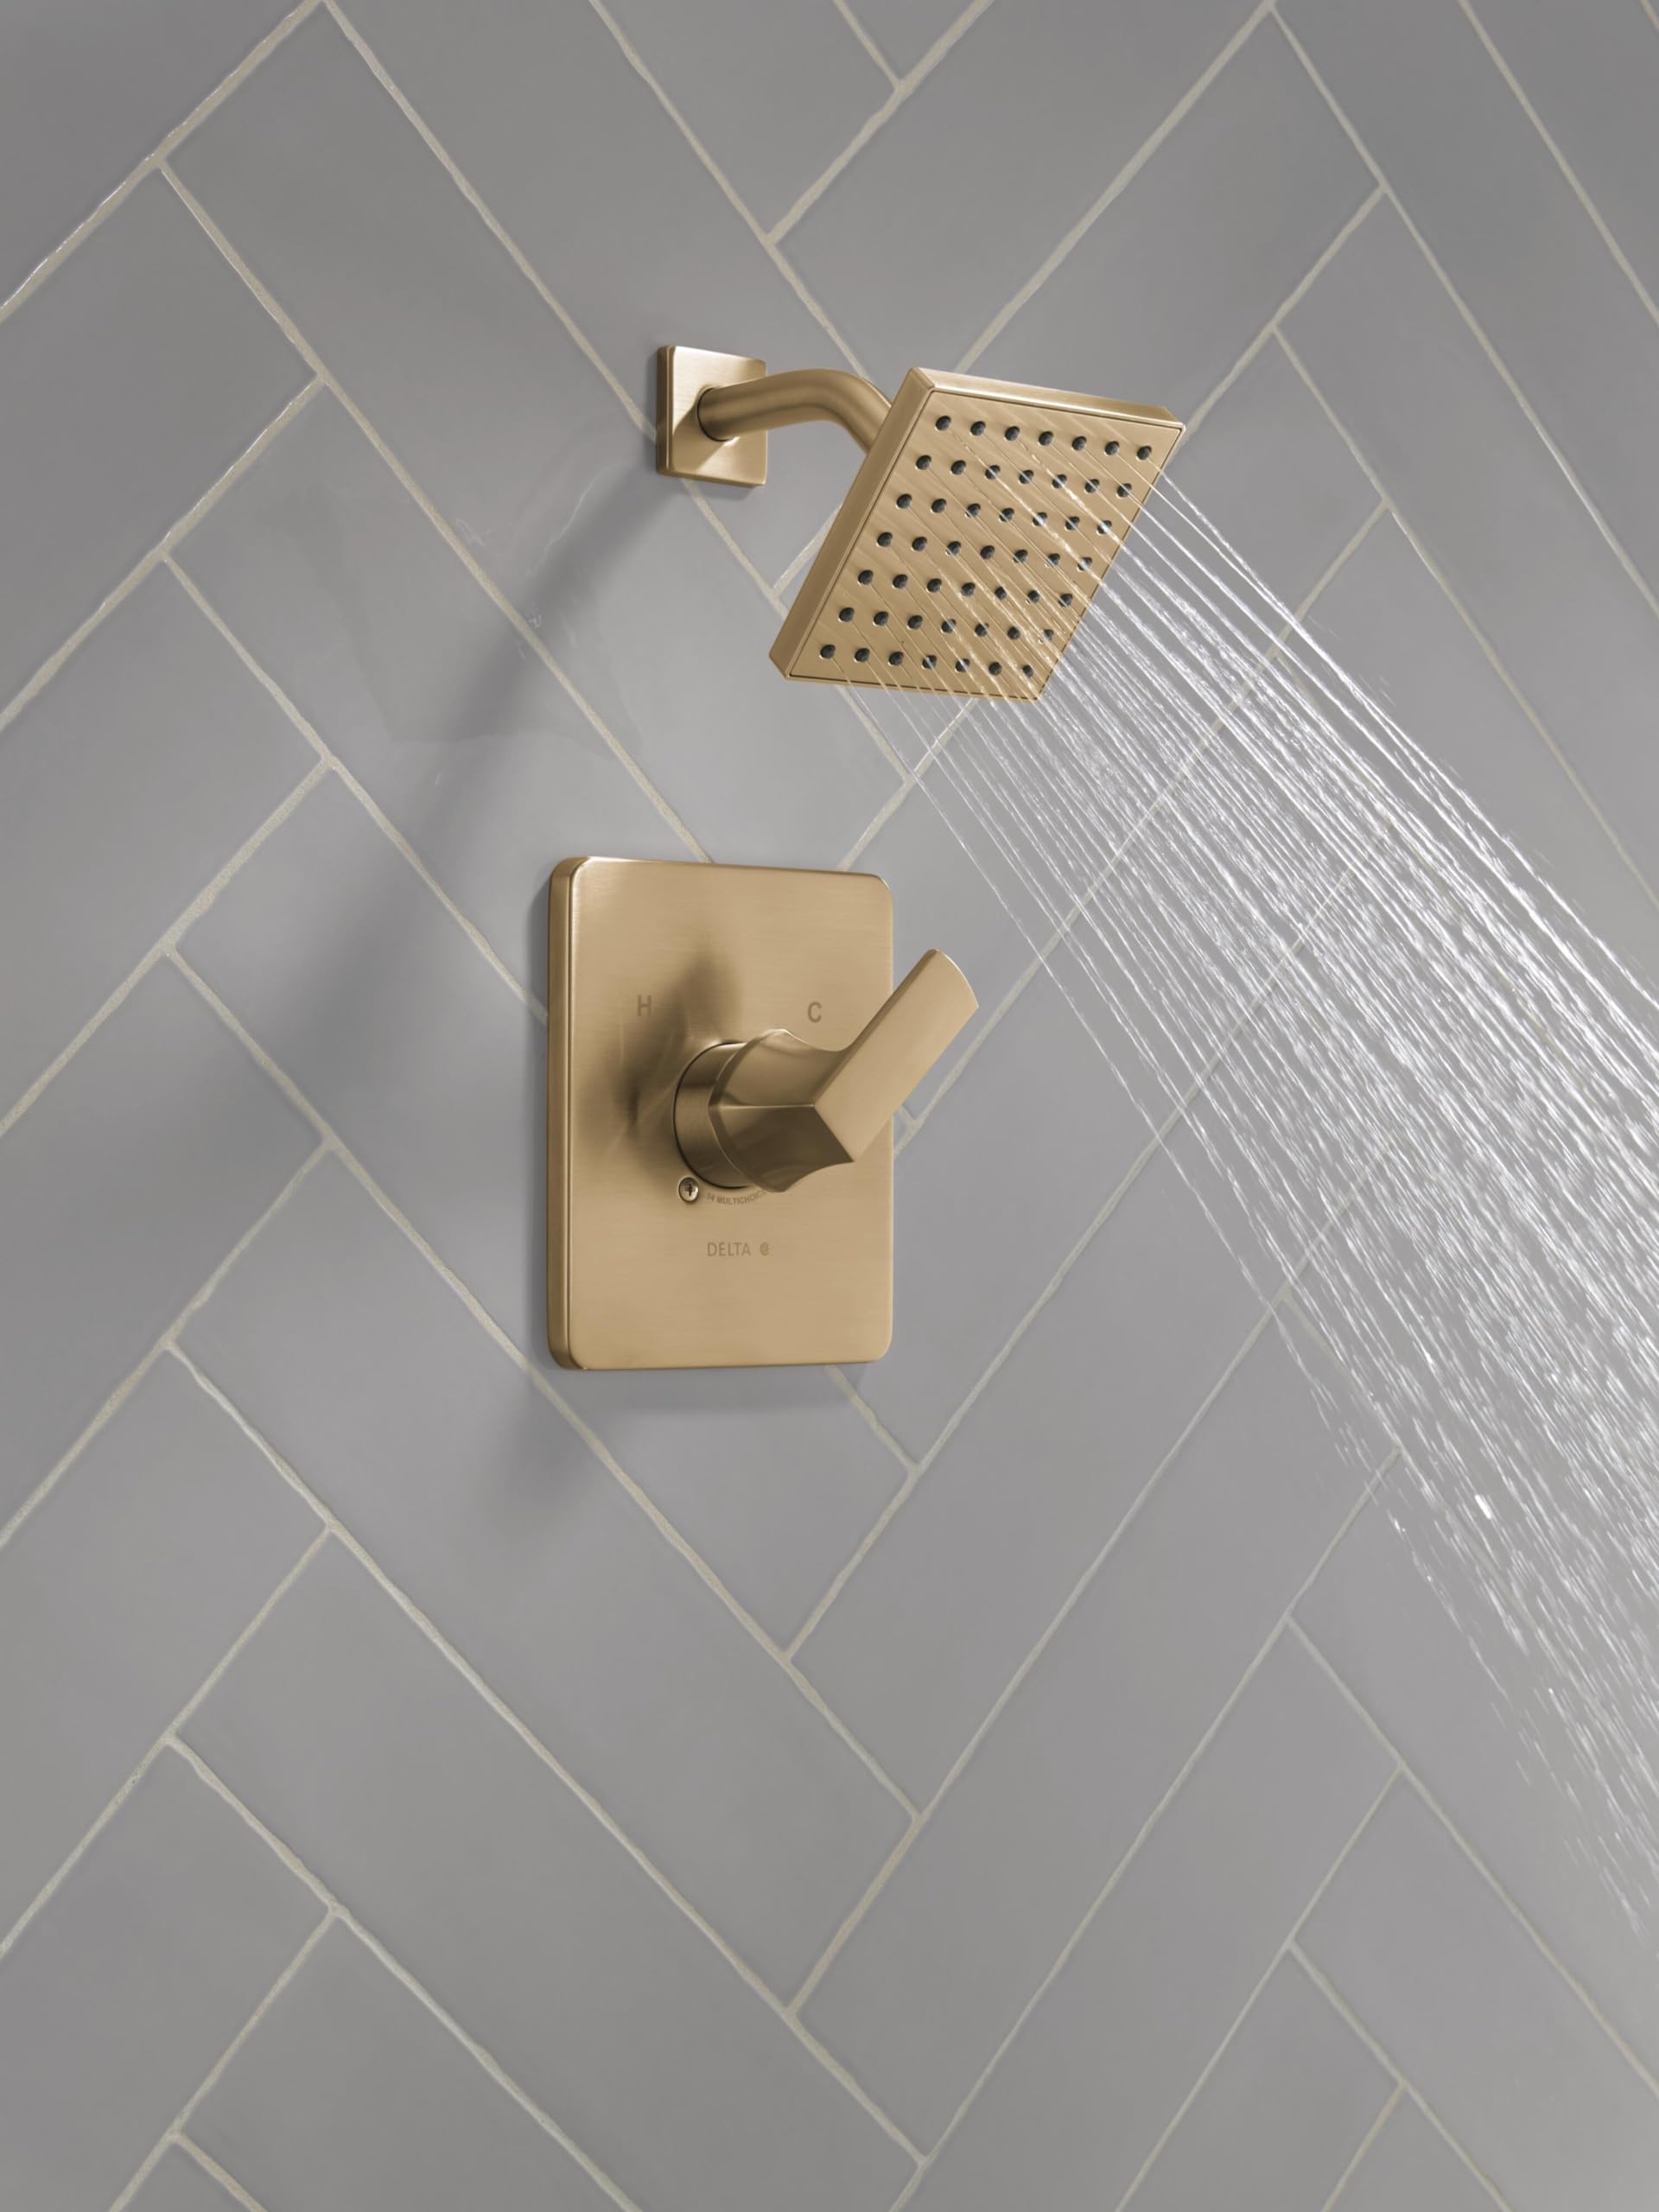 Delta Faucet Velum 14 Series Single-Function Gold Shower Faucet Set, Valve Trim Kit, Shower Handle, Delta Shower Trim Kit, Shower Set, Champagne Bronze T14237-CZ (Valve Not Included)